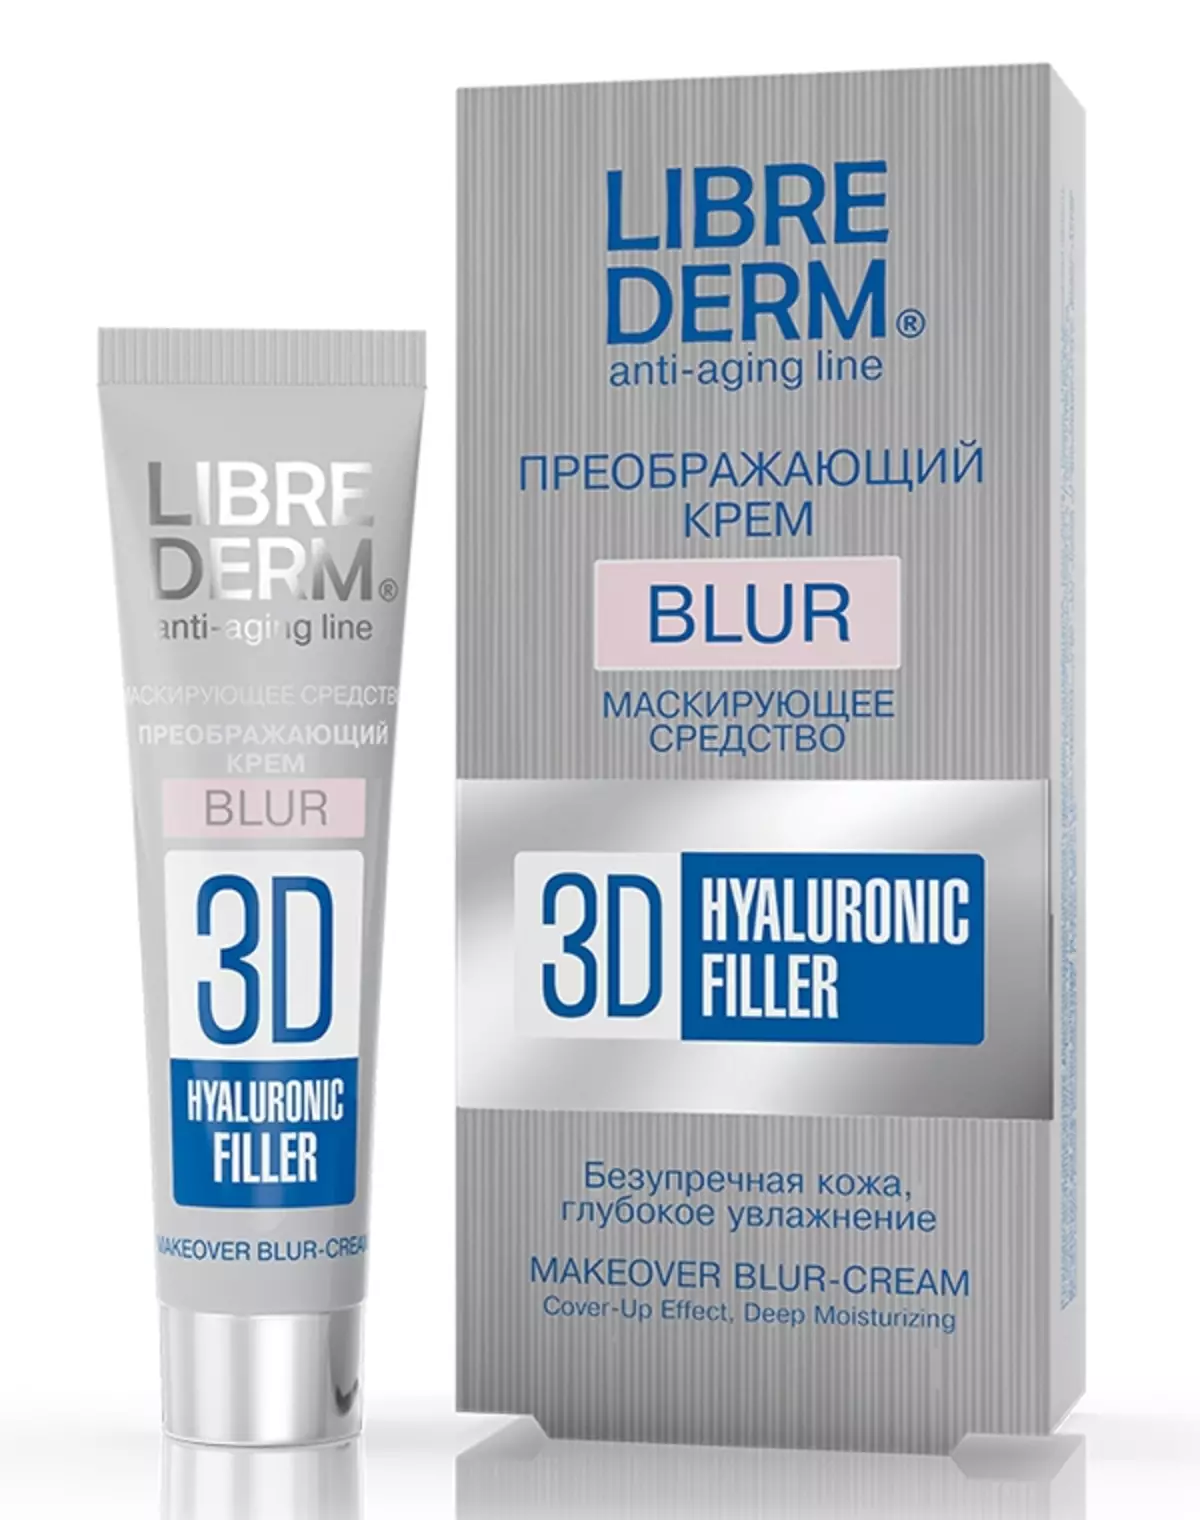 LibreDerm Kozmetik: Hyaluronik asit ve diğer ürünlerle yüz için yaşa göre fon seçimi. Kozmetologlar ve alıcılar hakkında yorumlar 4395_15